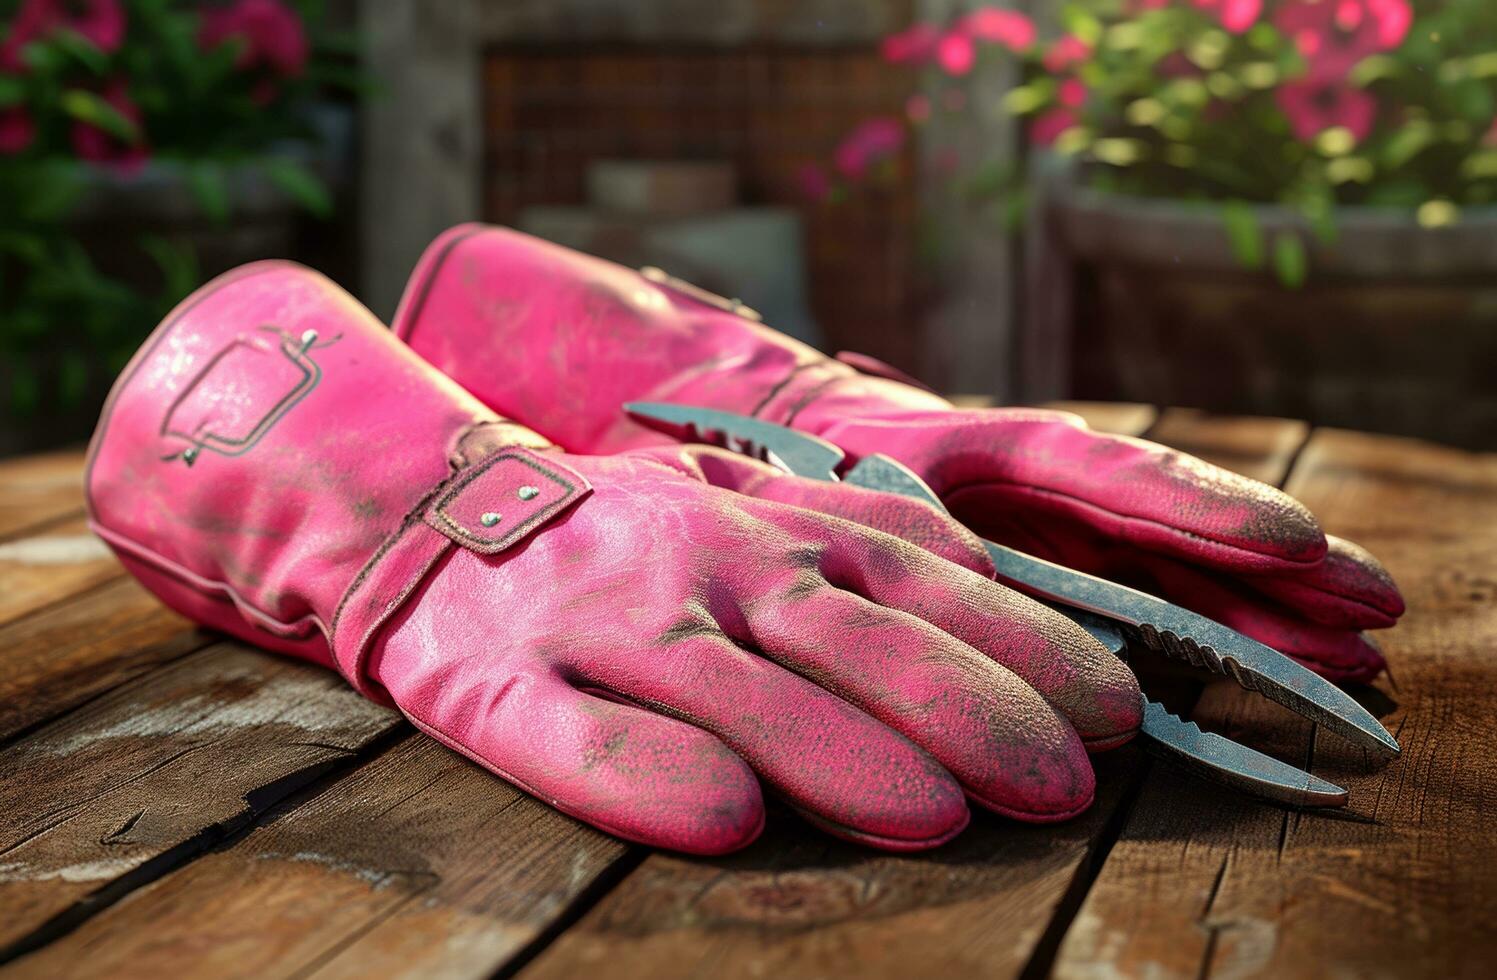 ai generado reversible rosado jardinería guantes y alicates en de madera mesa con madera antecedentes foto